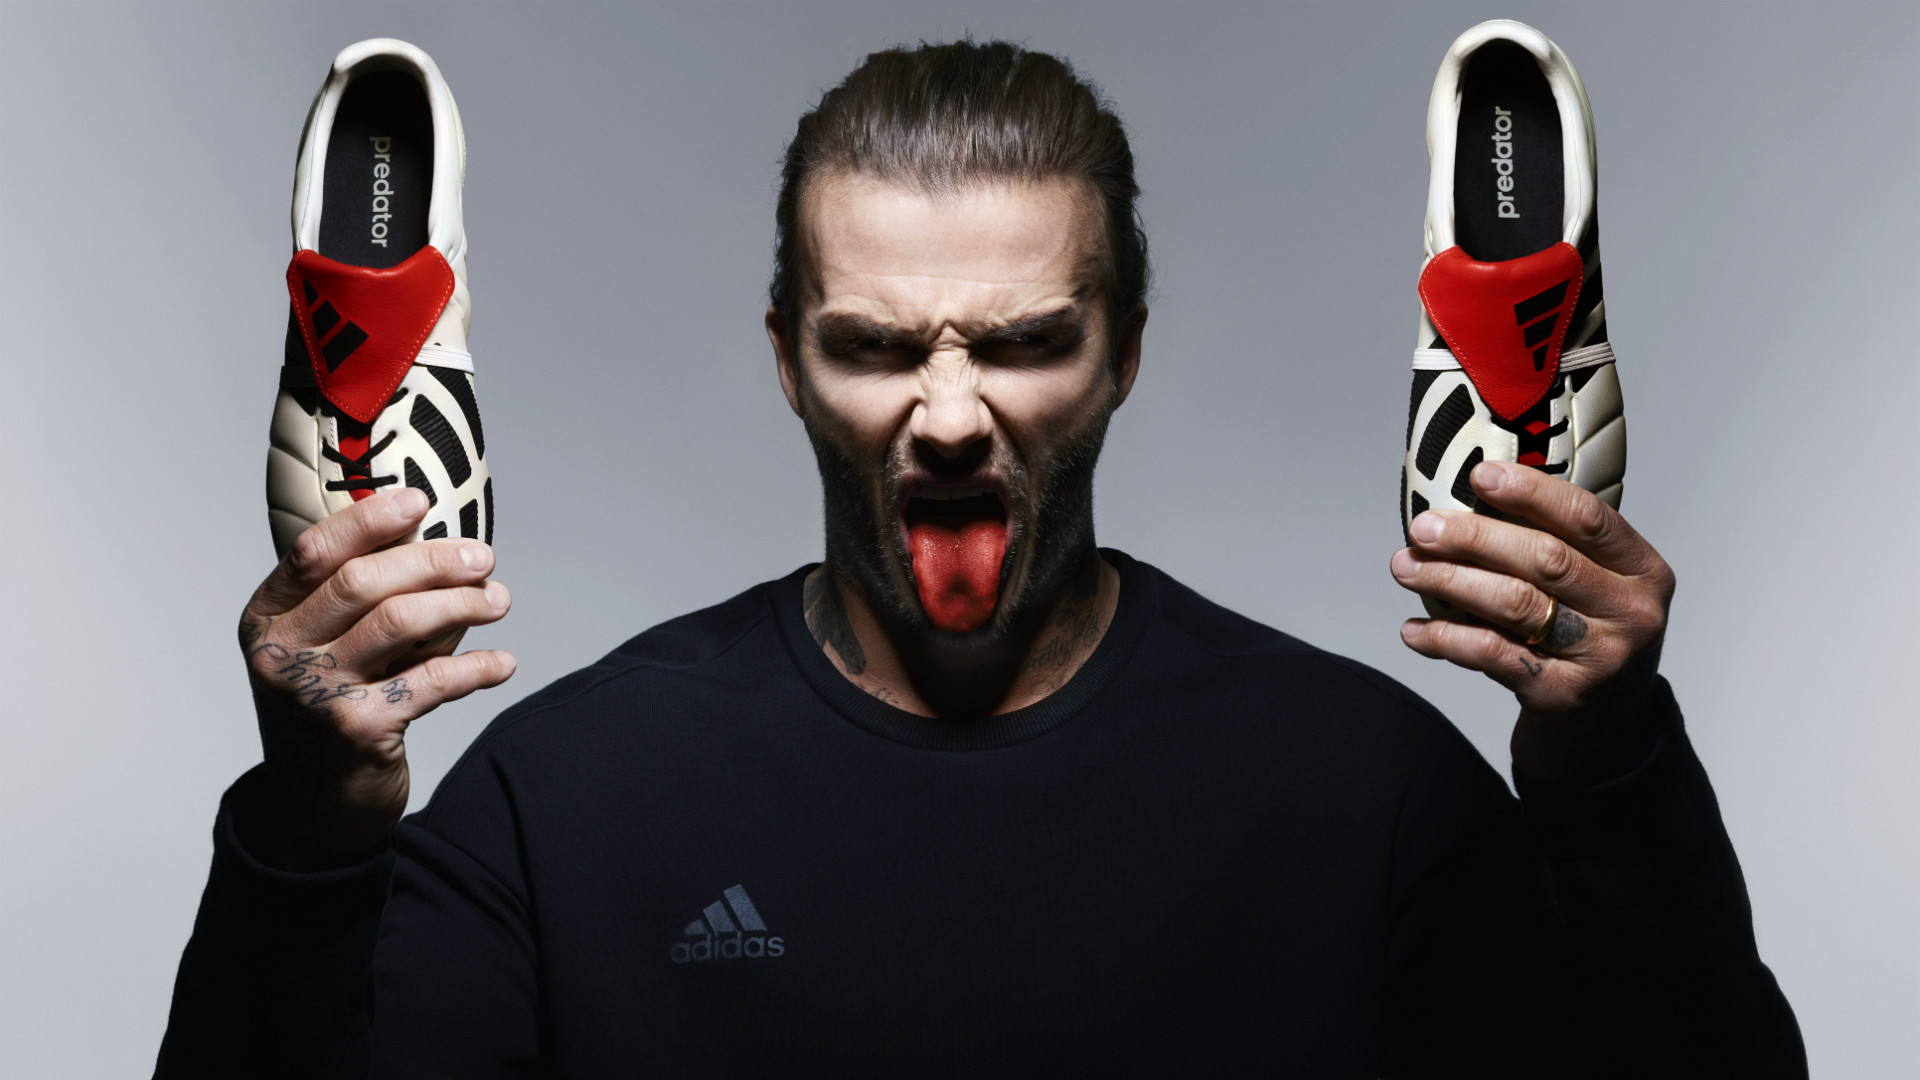 Adidas Predator Mania: David Beckham's 